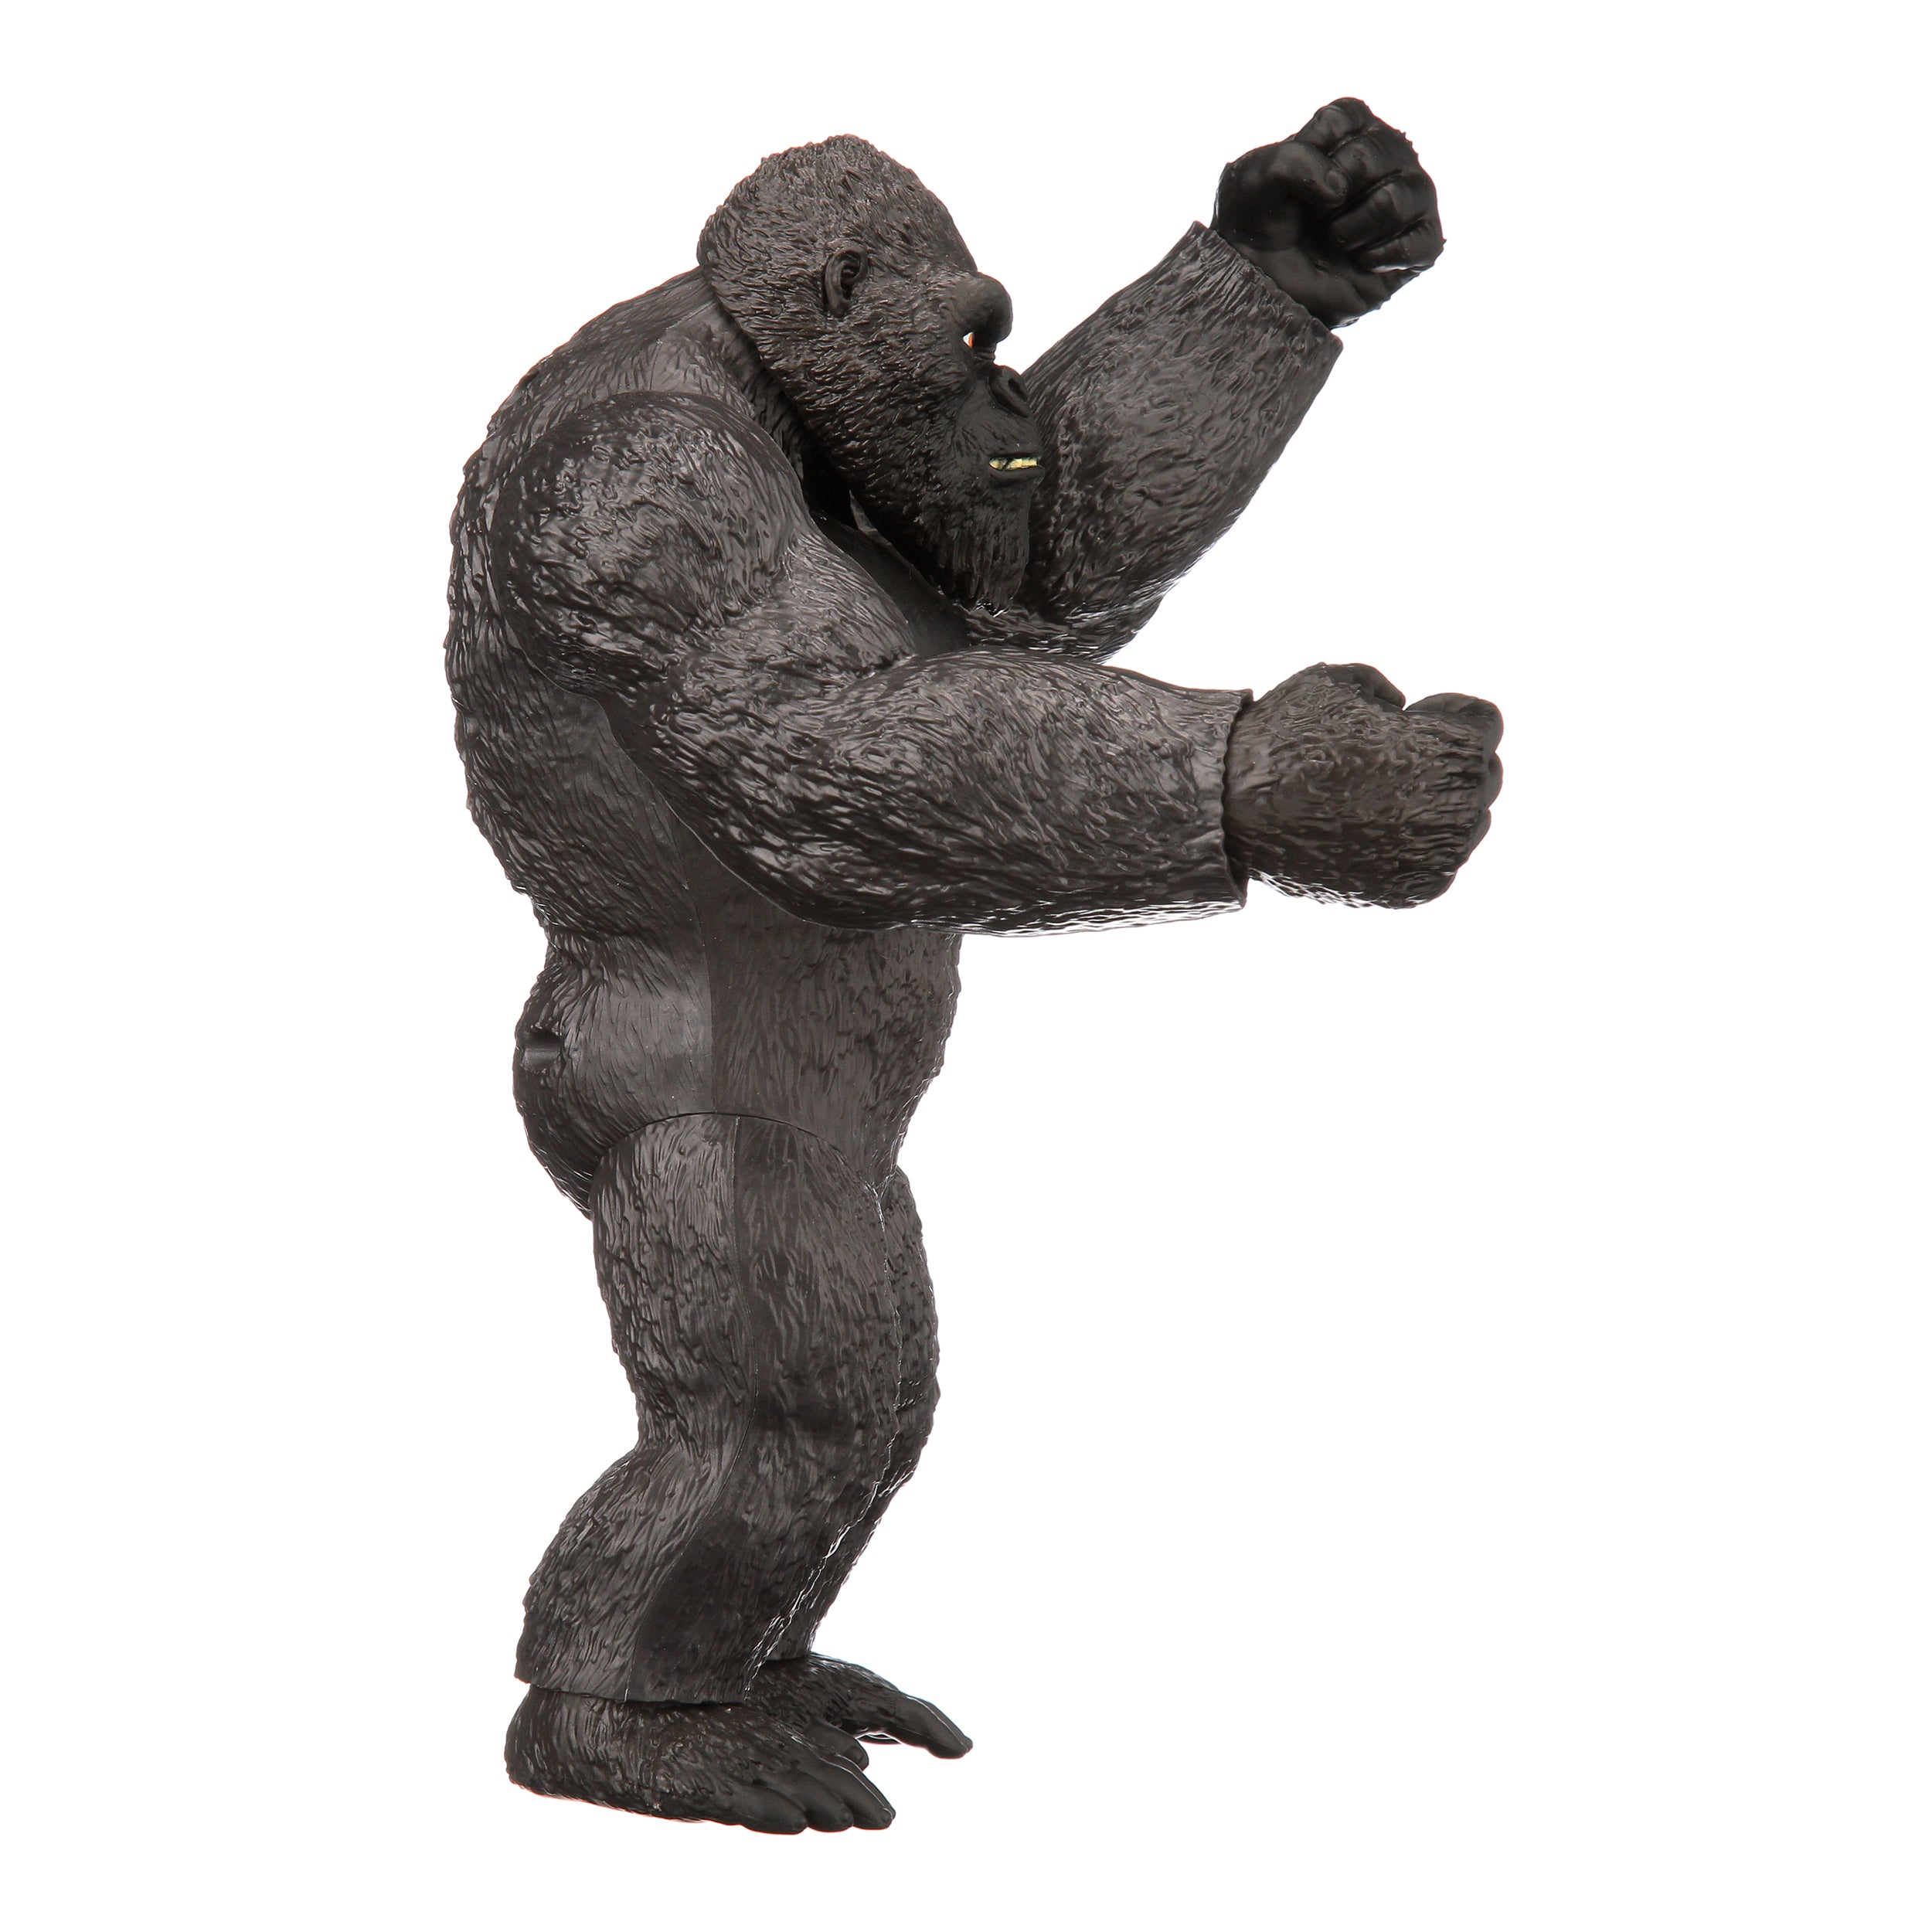 King Kong Gigante 11" Playmate - Friki Stores